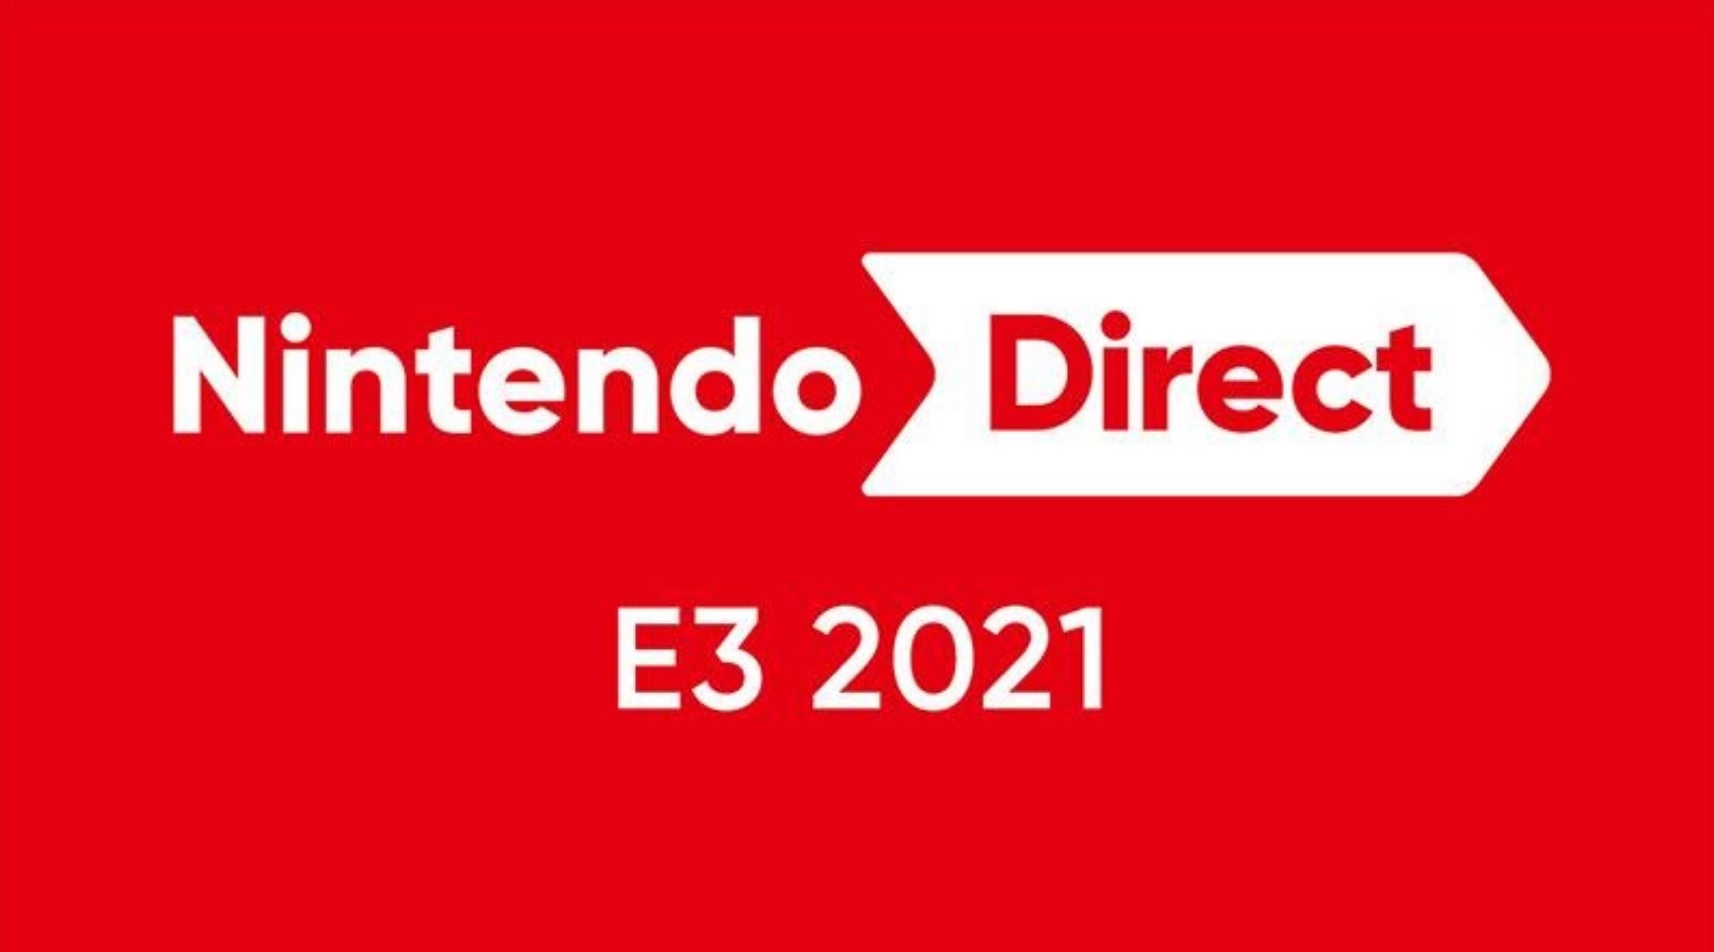 NINTENDO DIRECT E3 2021